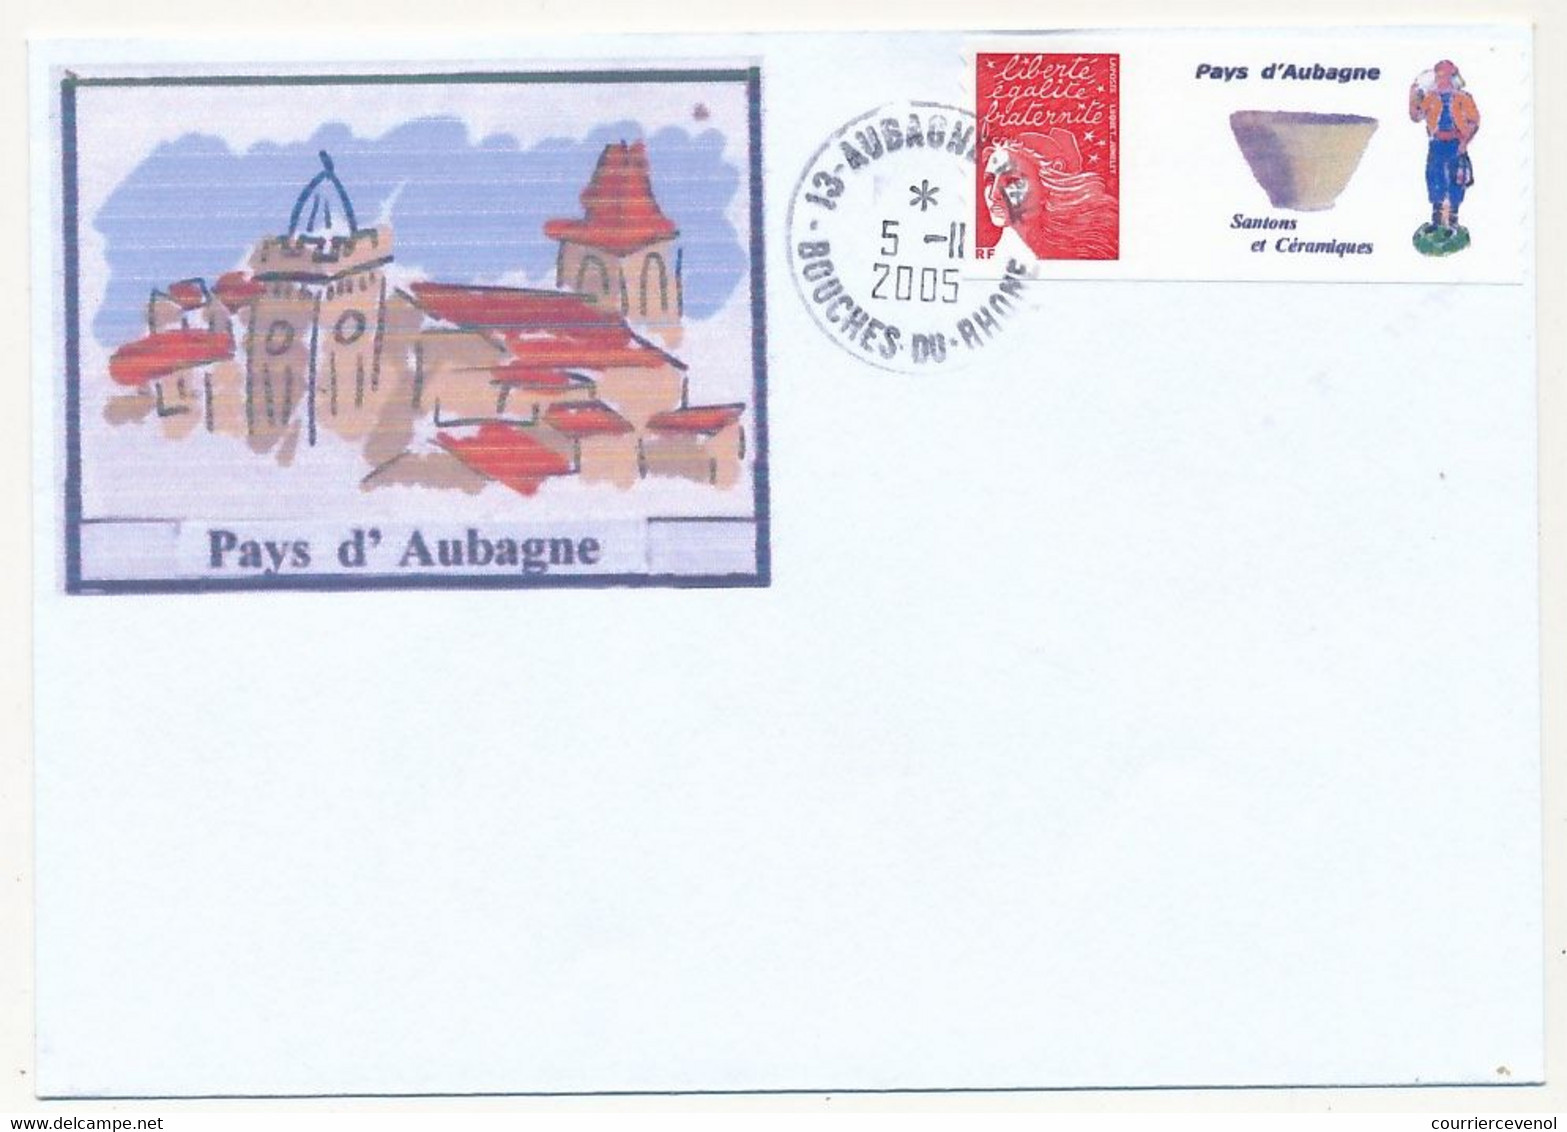 FRANCE - Enveloppe Affr. Luquet Rouge Personnalisé "Pays D'Aubagne" 5/11/2005 AUBAGNE - Non Adressée - Covers & Documents